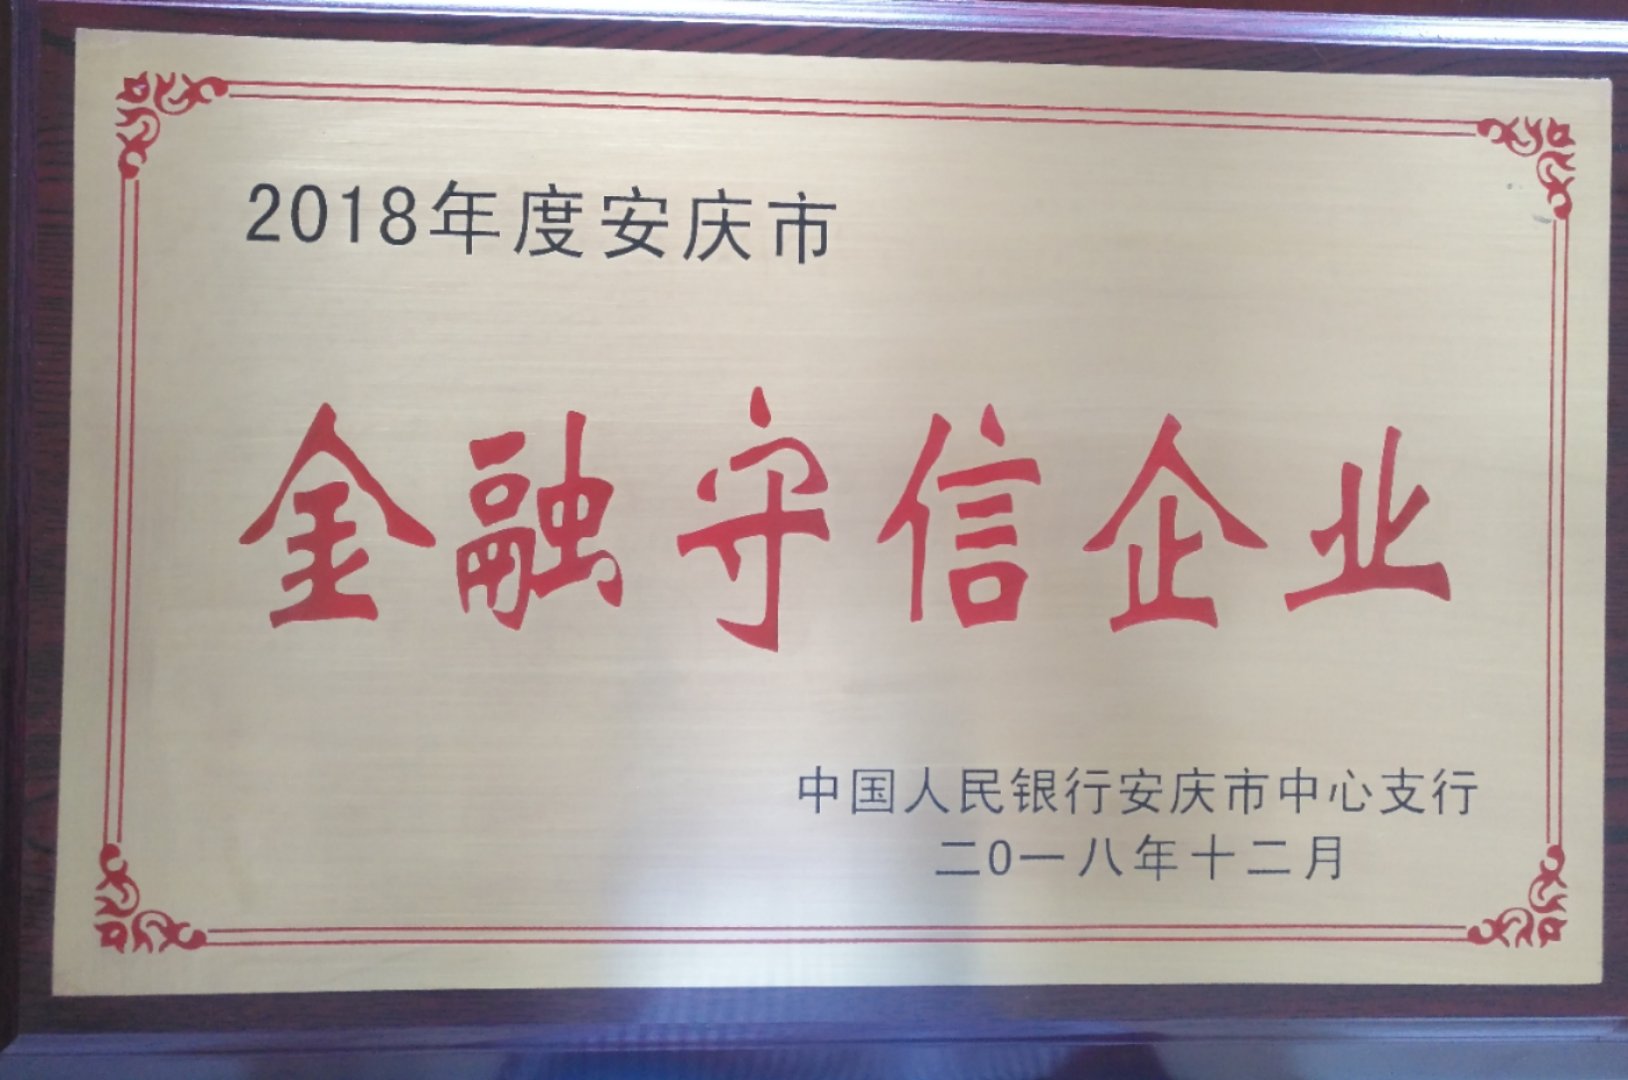 皖工榮獲2018年度安慶市金融守信企業